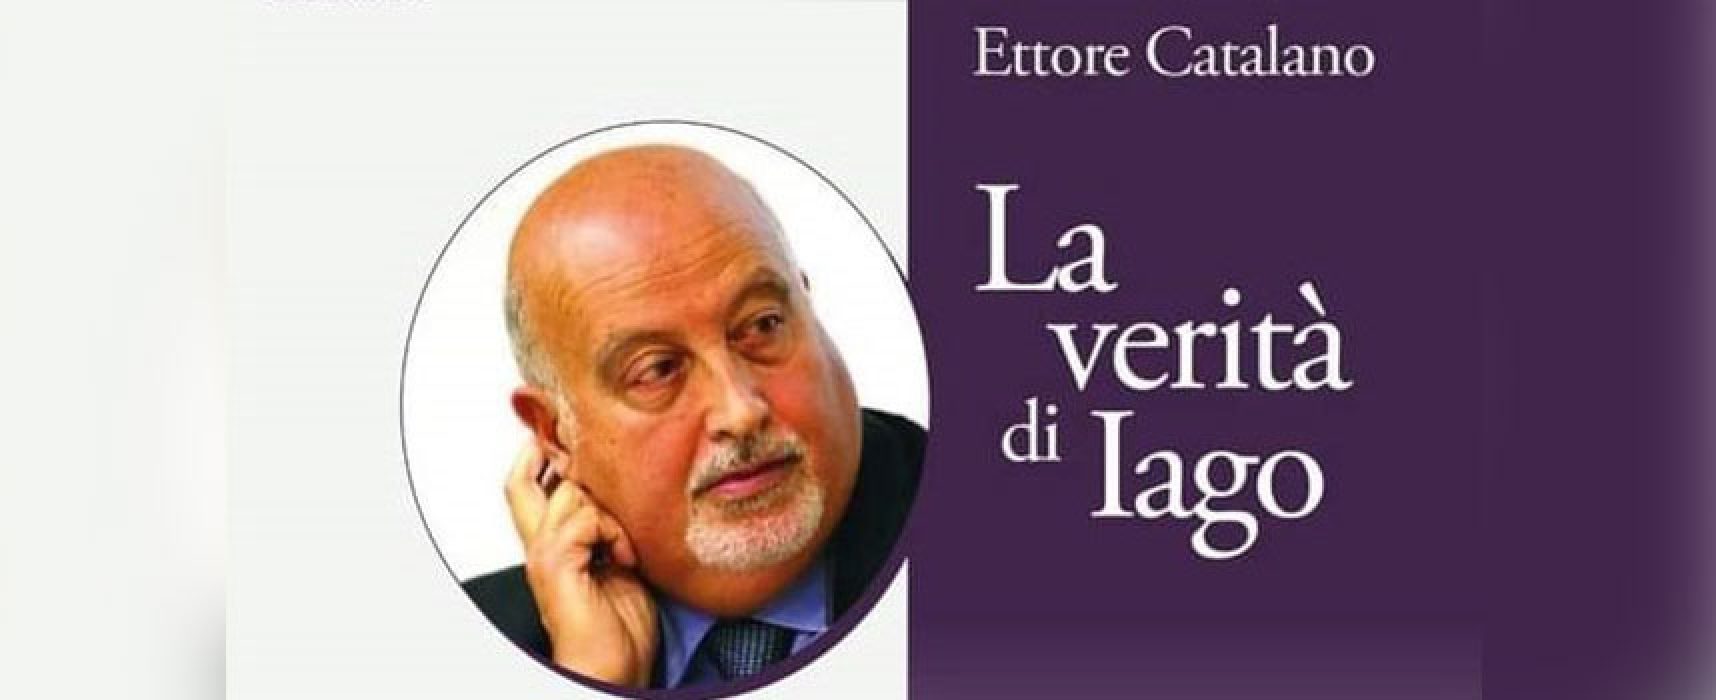 Ettore Catalano presenta a Bisceglie “La verità di Iago”